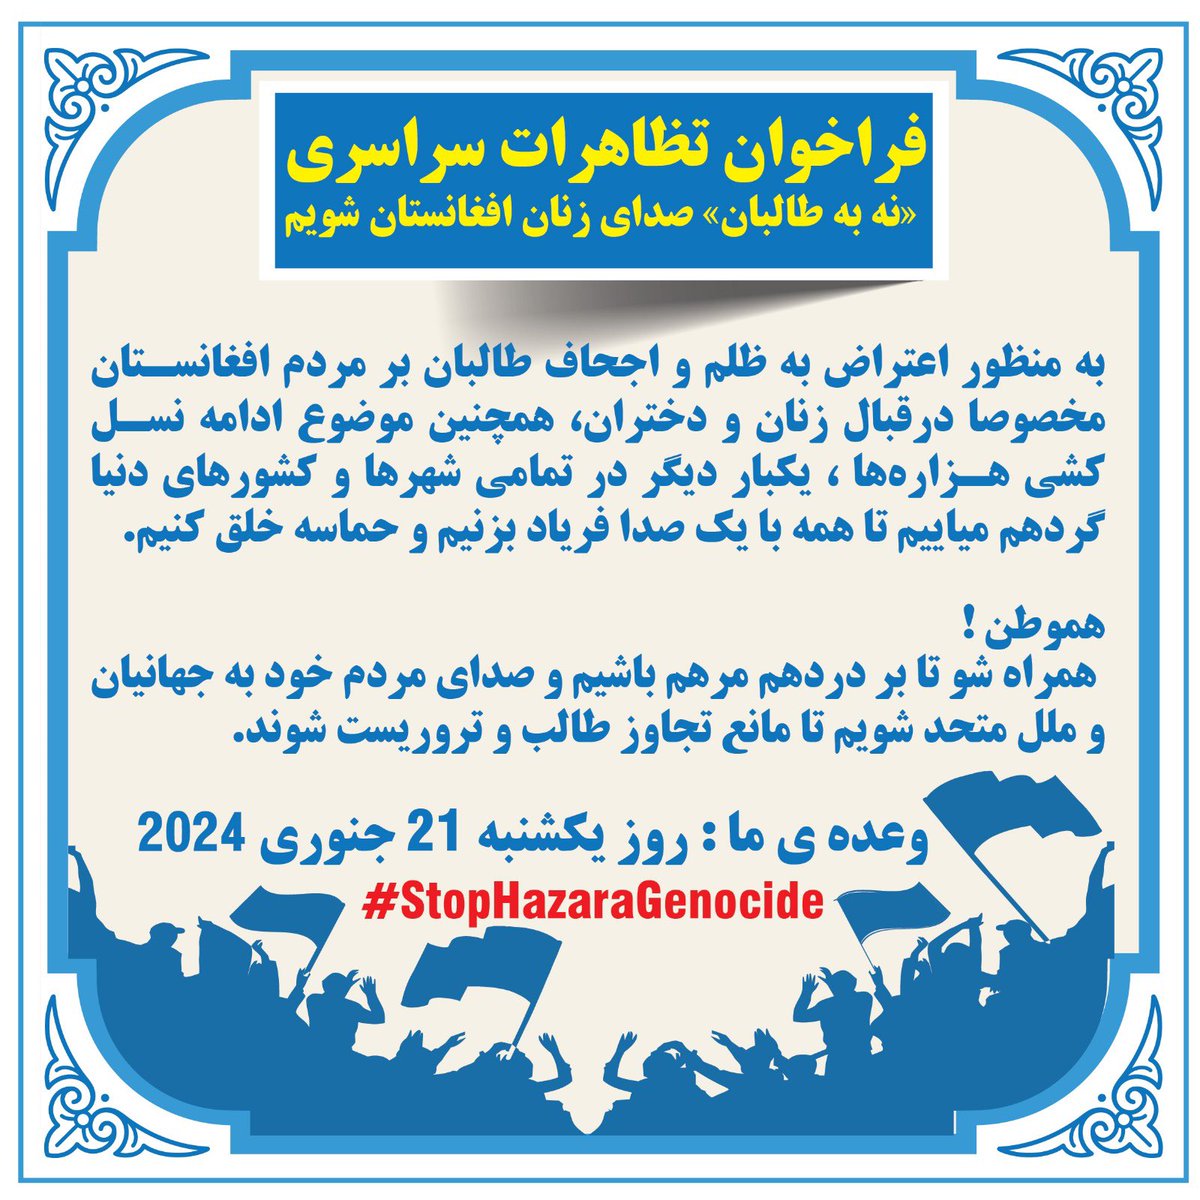 هم وطن برای حق من، حق تو و حق ما به پا خیزیم!
زمان: یکشنبه ۲۱ جنوری
#StopHazaraGenocide 
#StandWithWomenInAfghanistan